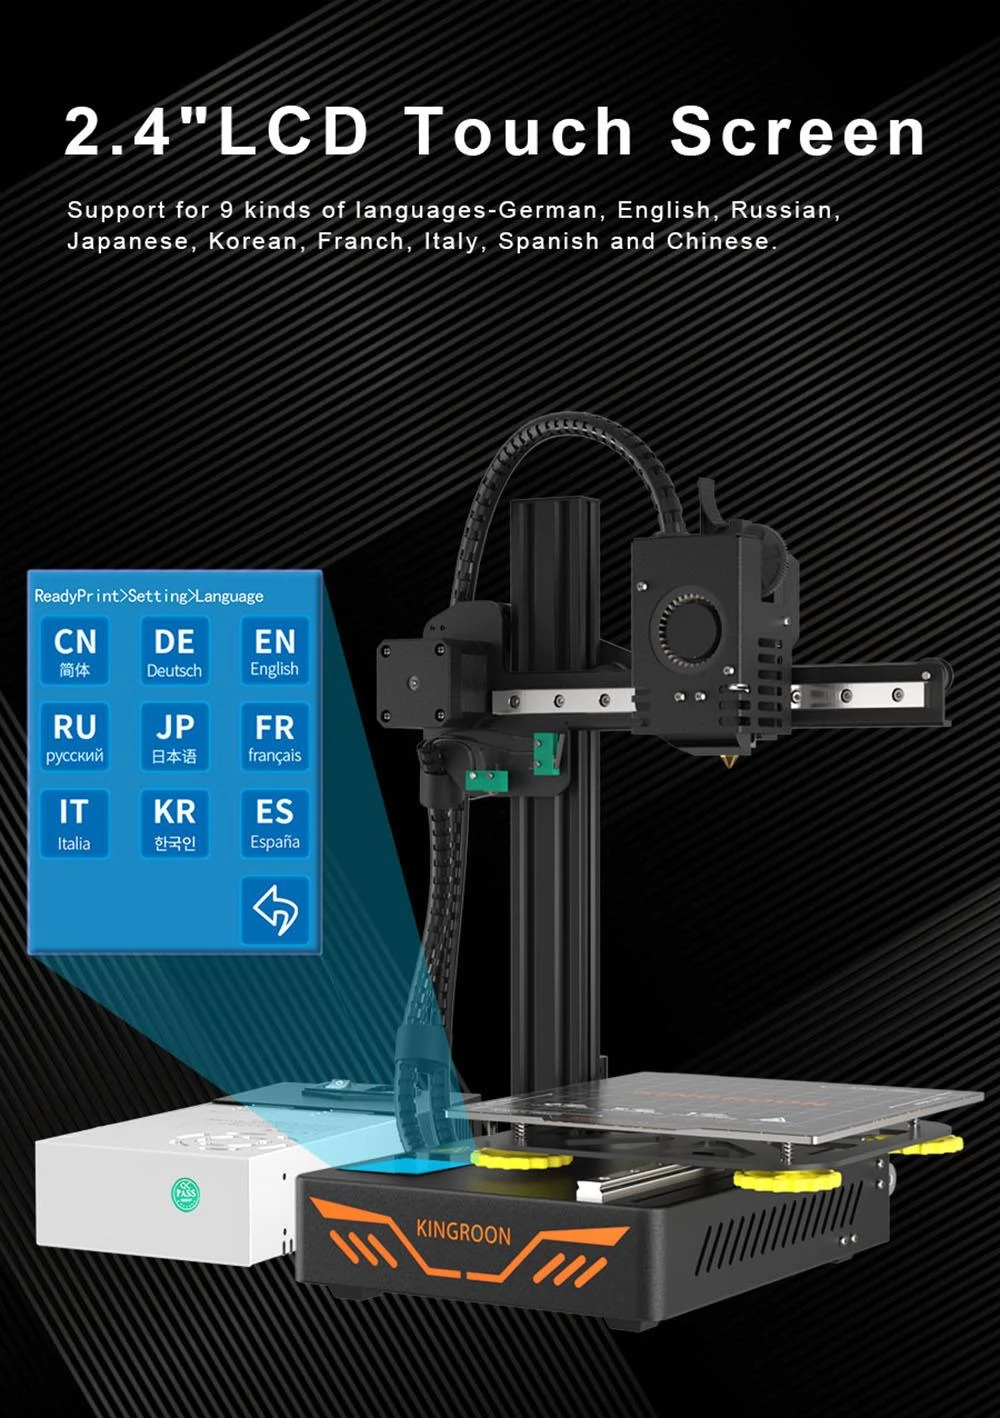 KINGROON KP3S 3D Printer Single Nozzle Aluminum Double Linear Guide Rails Double Cooling Fans 180x180x180mm EU Plug